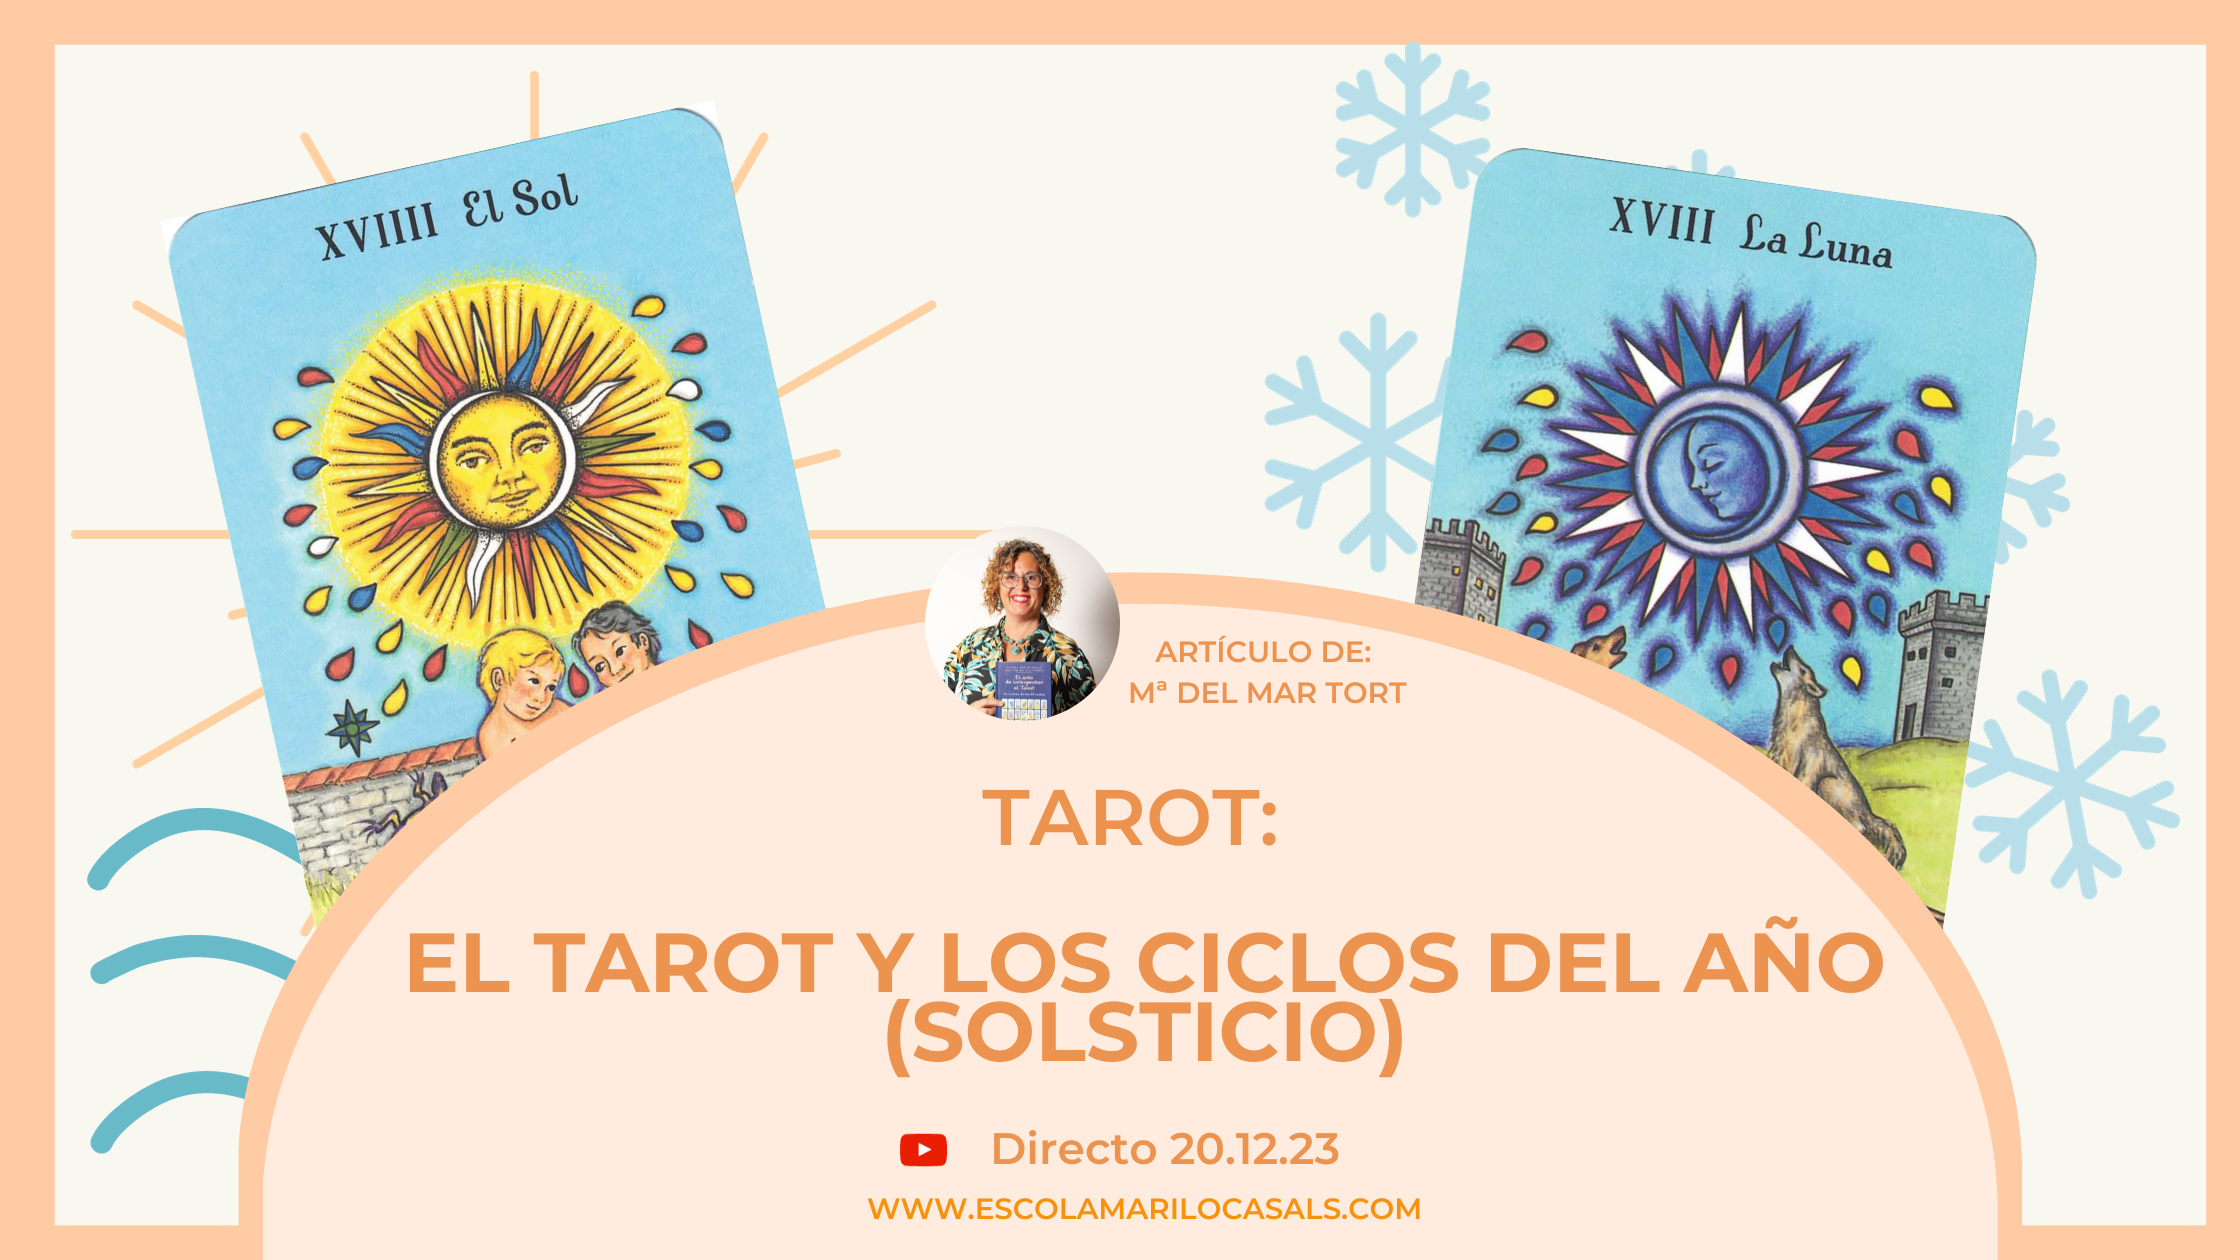 El Tarot y los Ciclos del año (Solsticio) redactado por Mª del Mar Trot